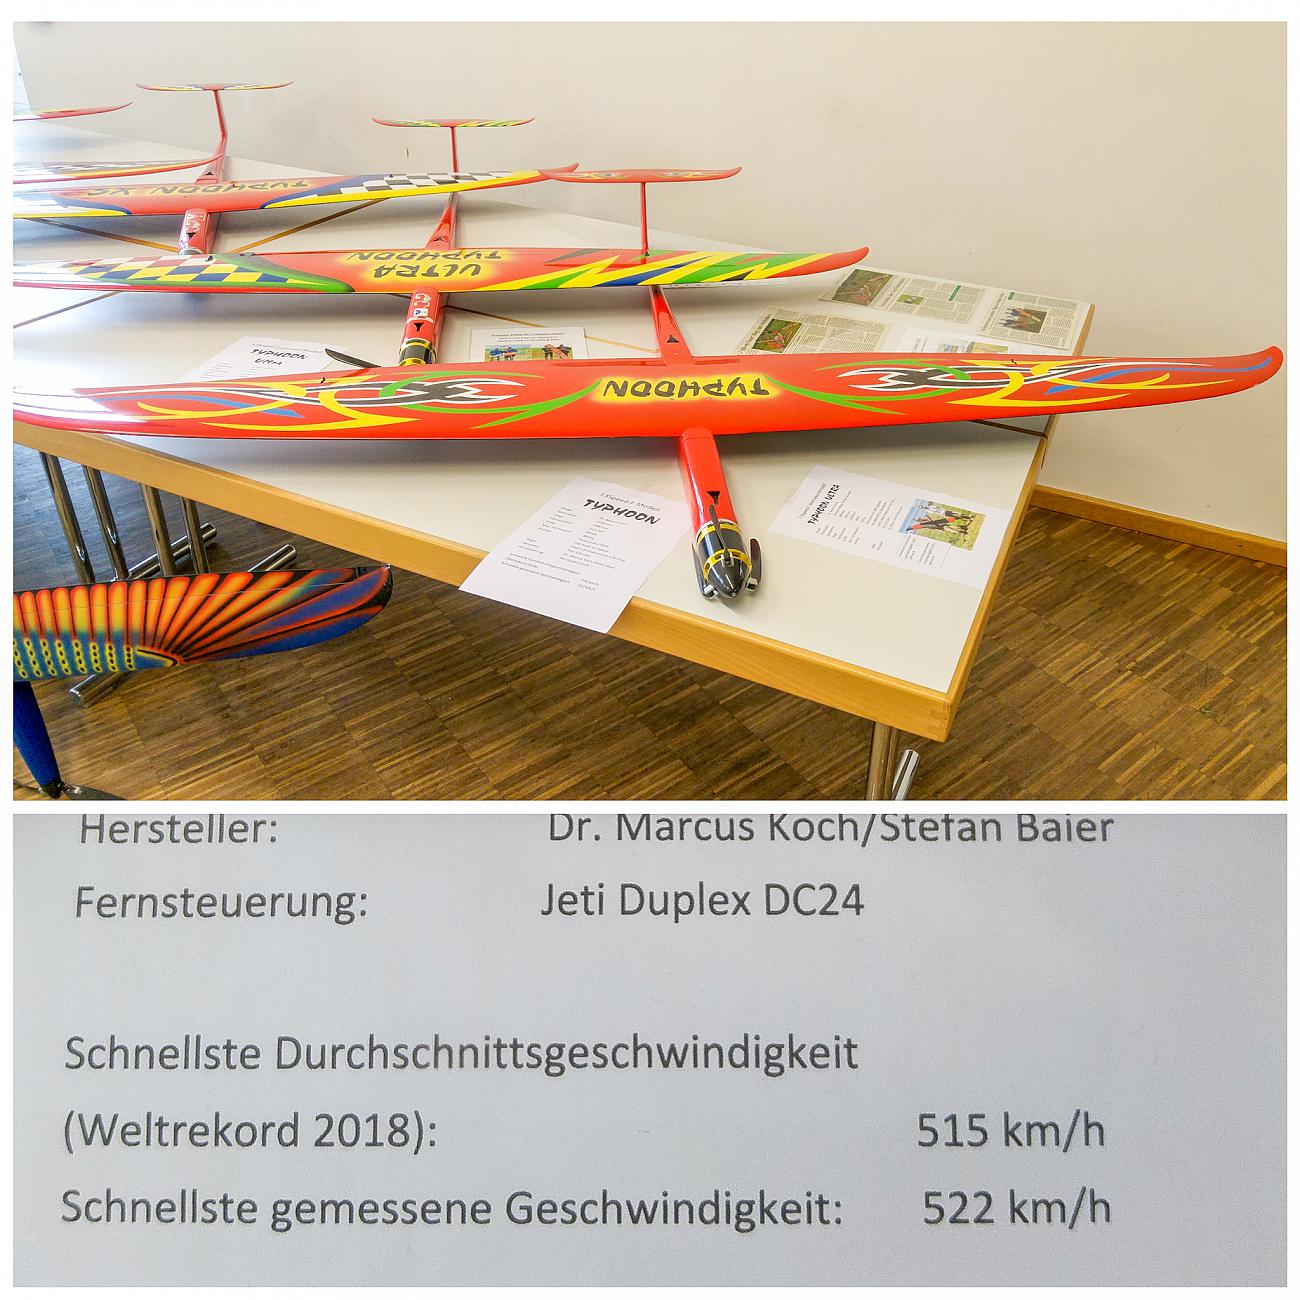 Foto: Martin Zehrer - Unglaublich schnell... Über 500 km/h mit Elektroantrieb... Gesehen auf der Modellbau-Ausstellung in Kemnath. 